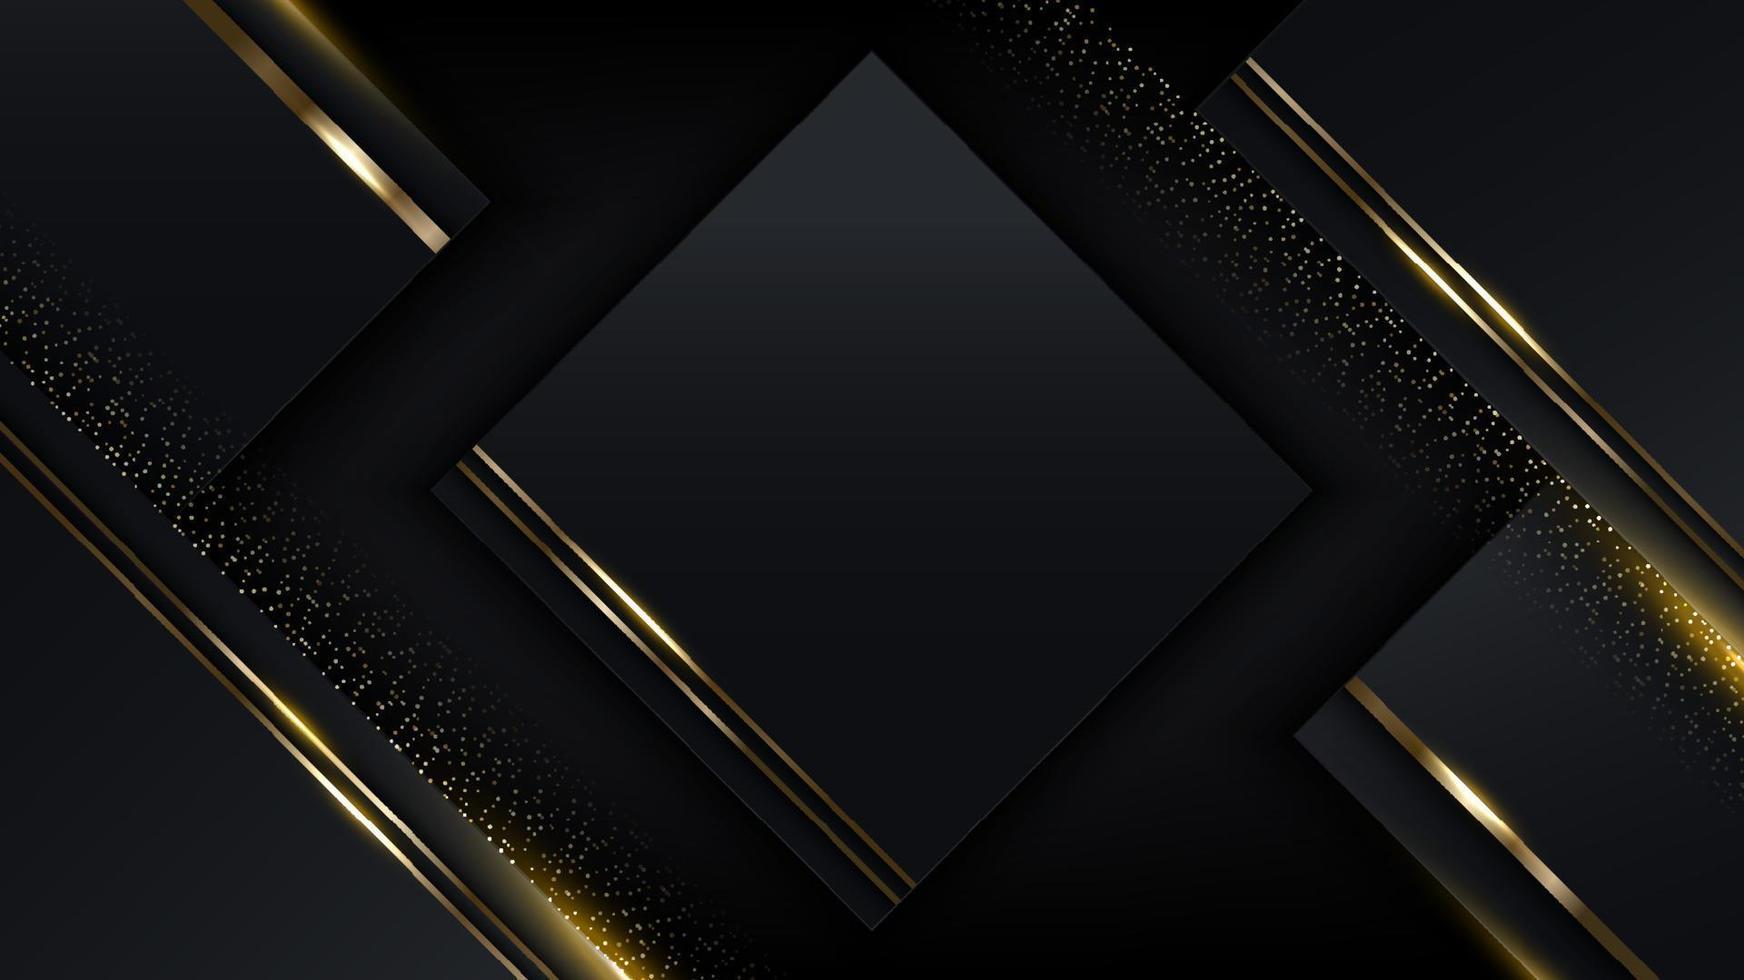 Conception de modèle de luxe moderne 3d rayures de carrés noirs et dorés avec une ligne de paillettes d'or scintillant sur fond sombre vecteur